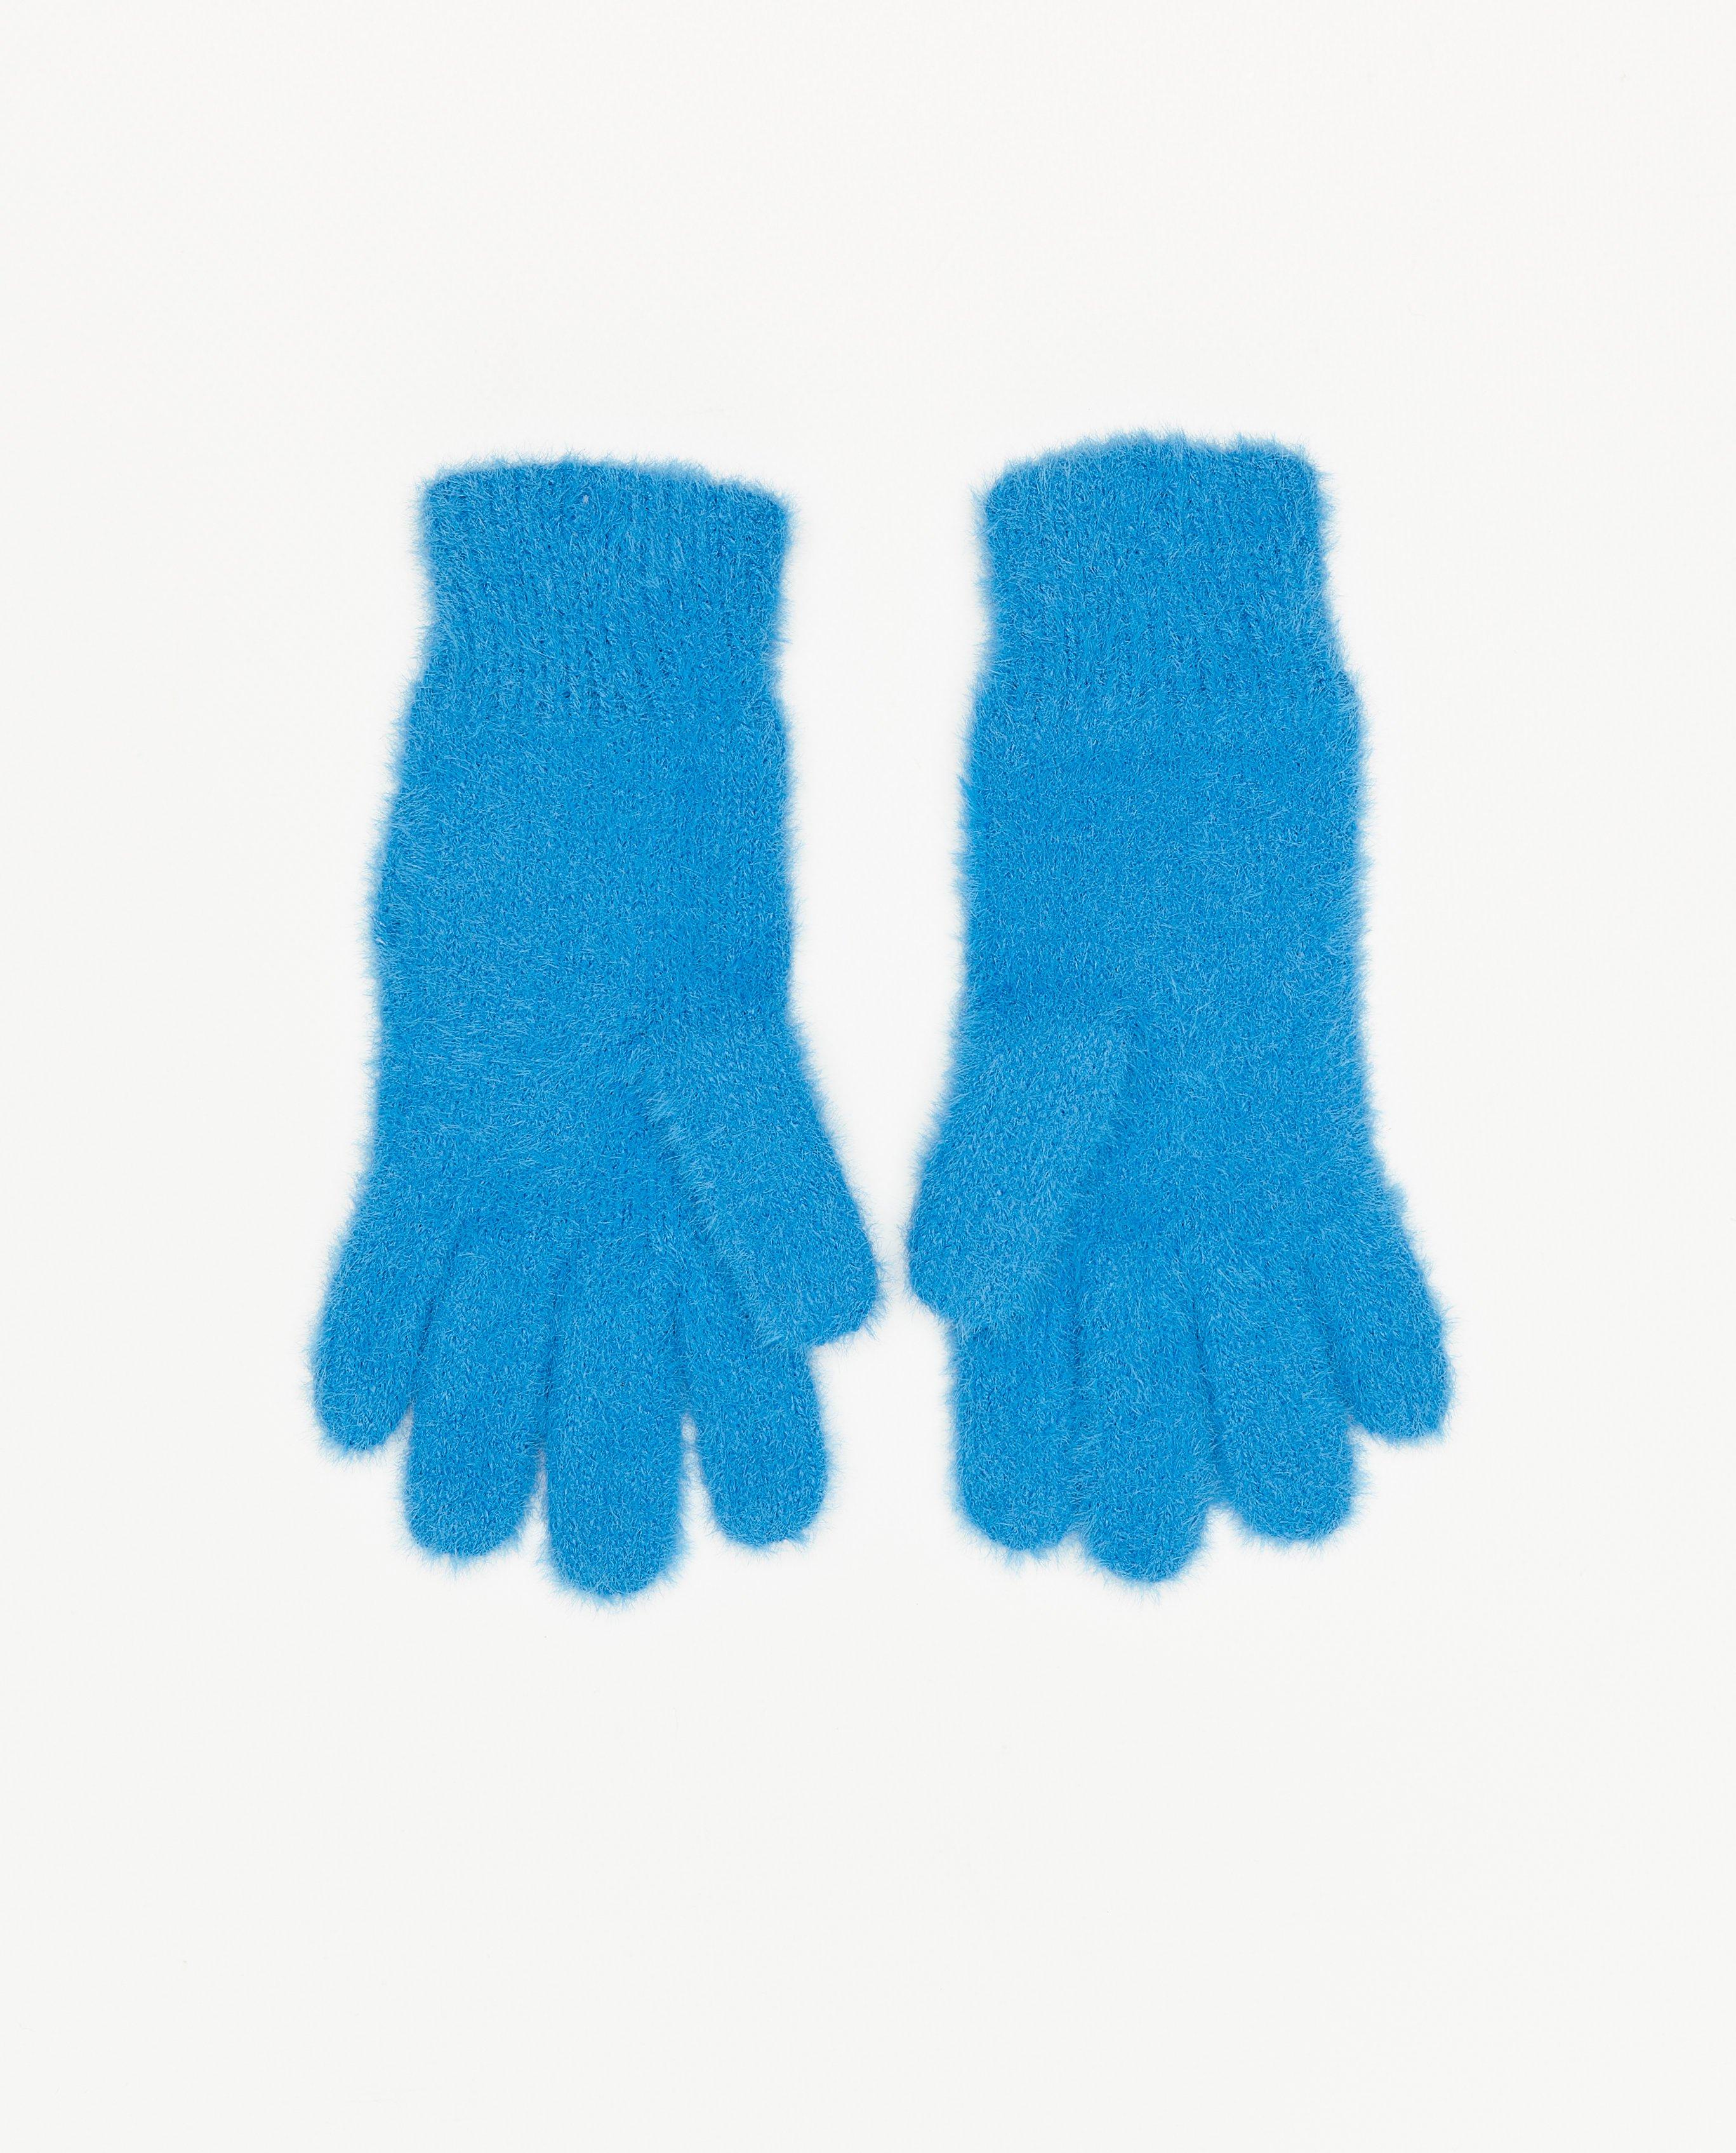 Breigoed - Fuzzy handschoenen met smiley